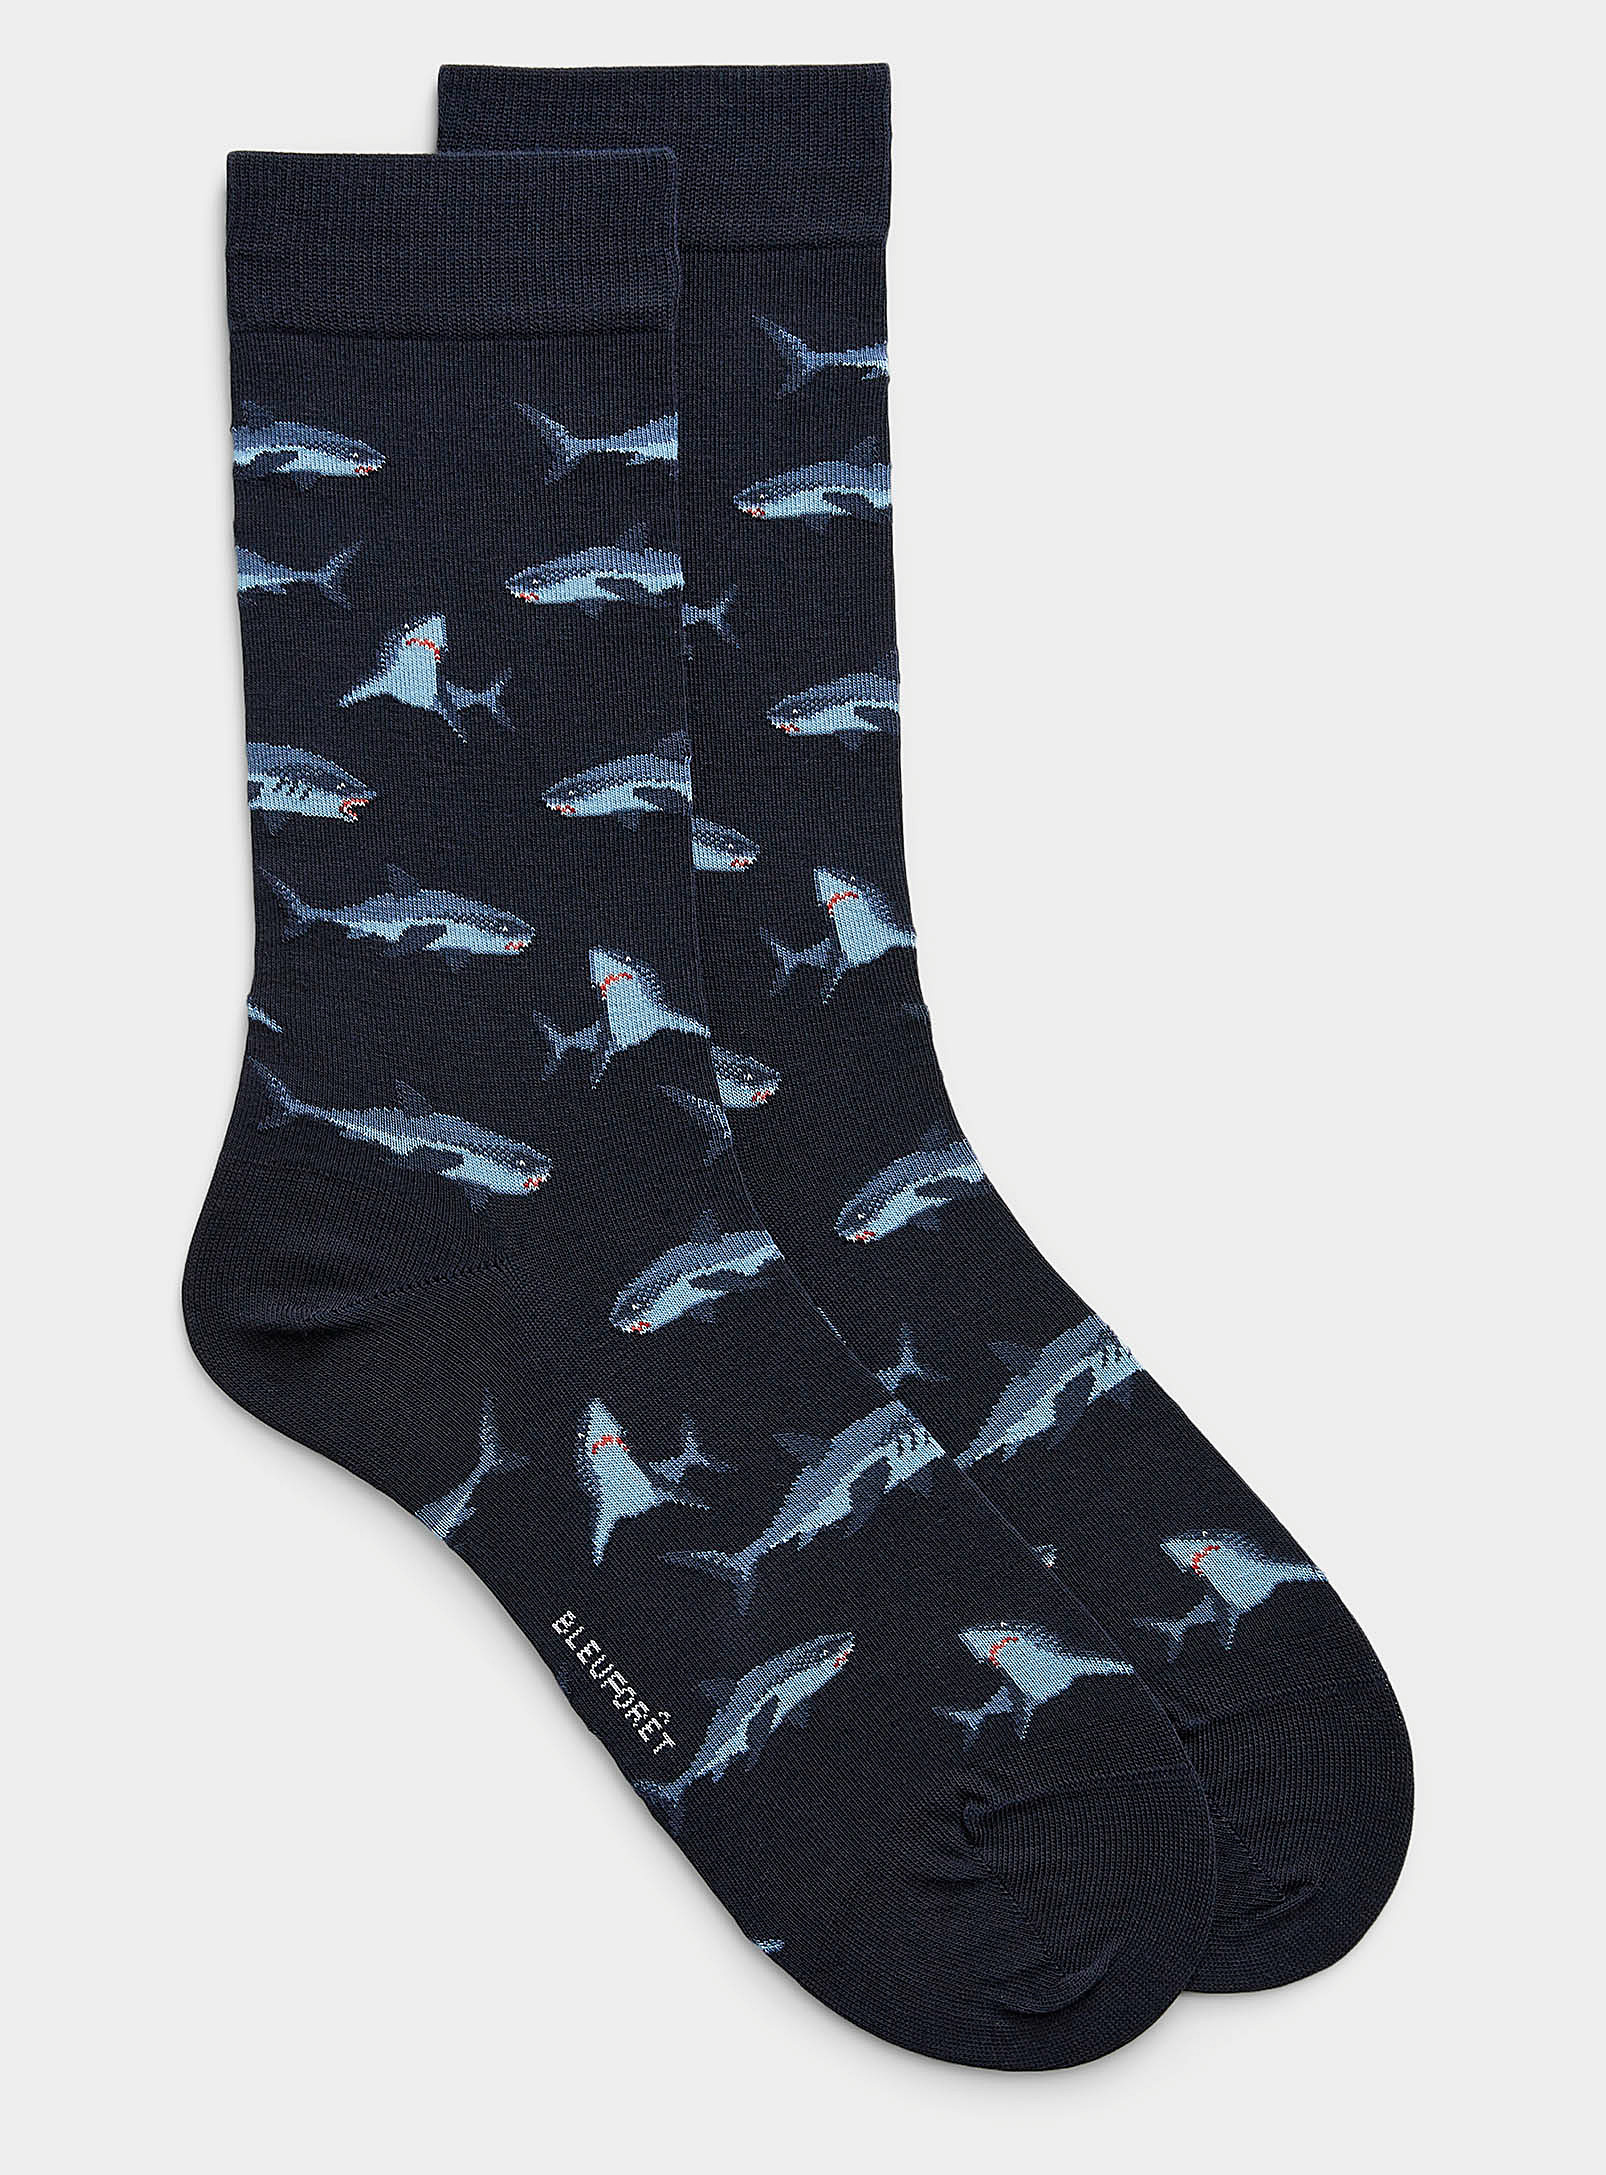 Bleuforêt - La chaussette requins